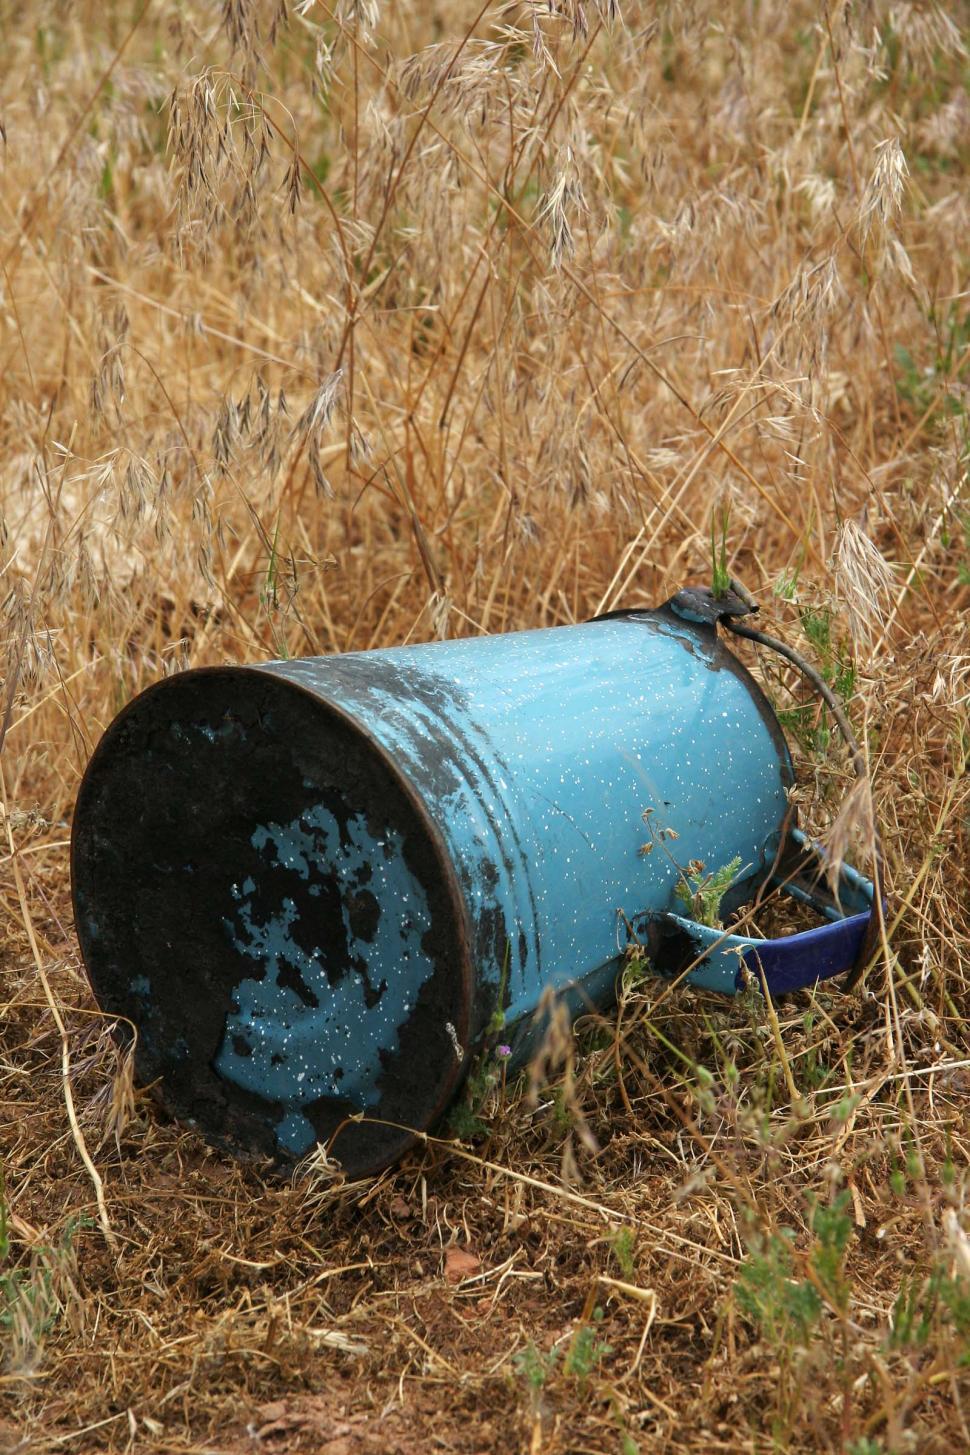 Free Image of Blue Barrel in Field 